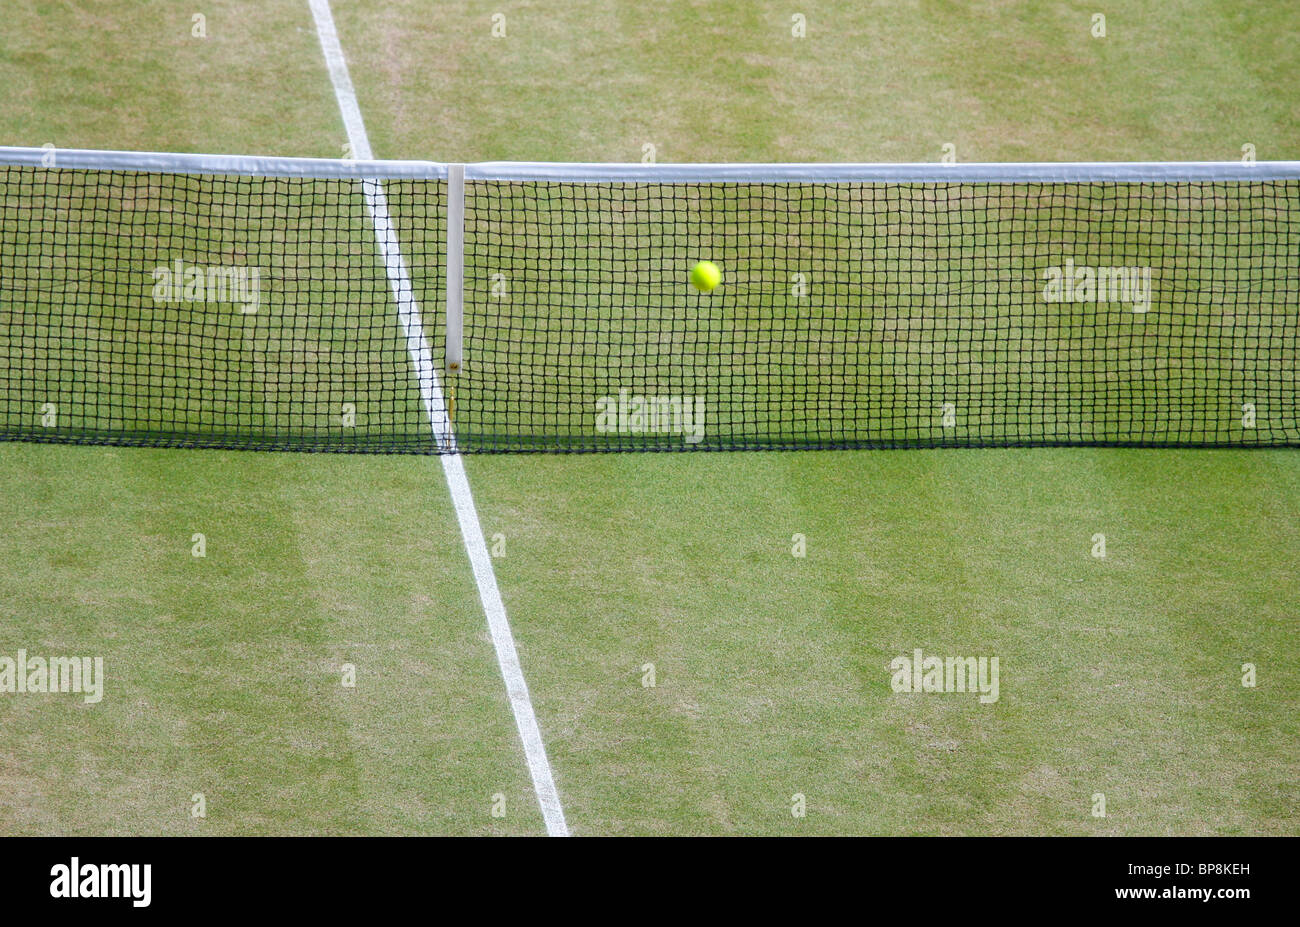 Vista desde arriba de una bola en la red en el centro de Wimbledon vacío corte Foto de stock